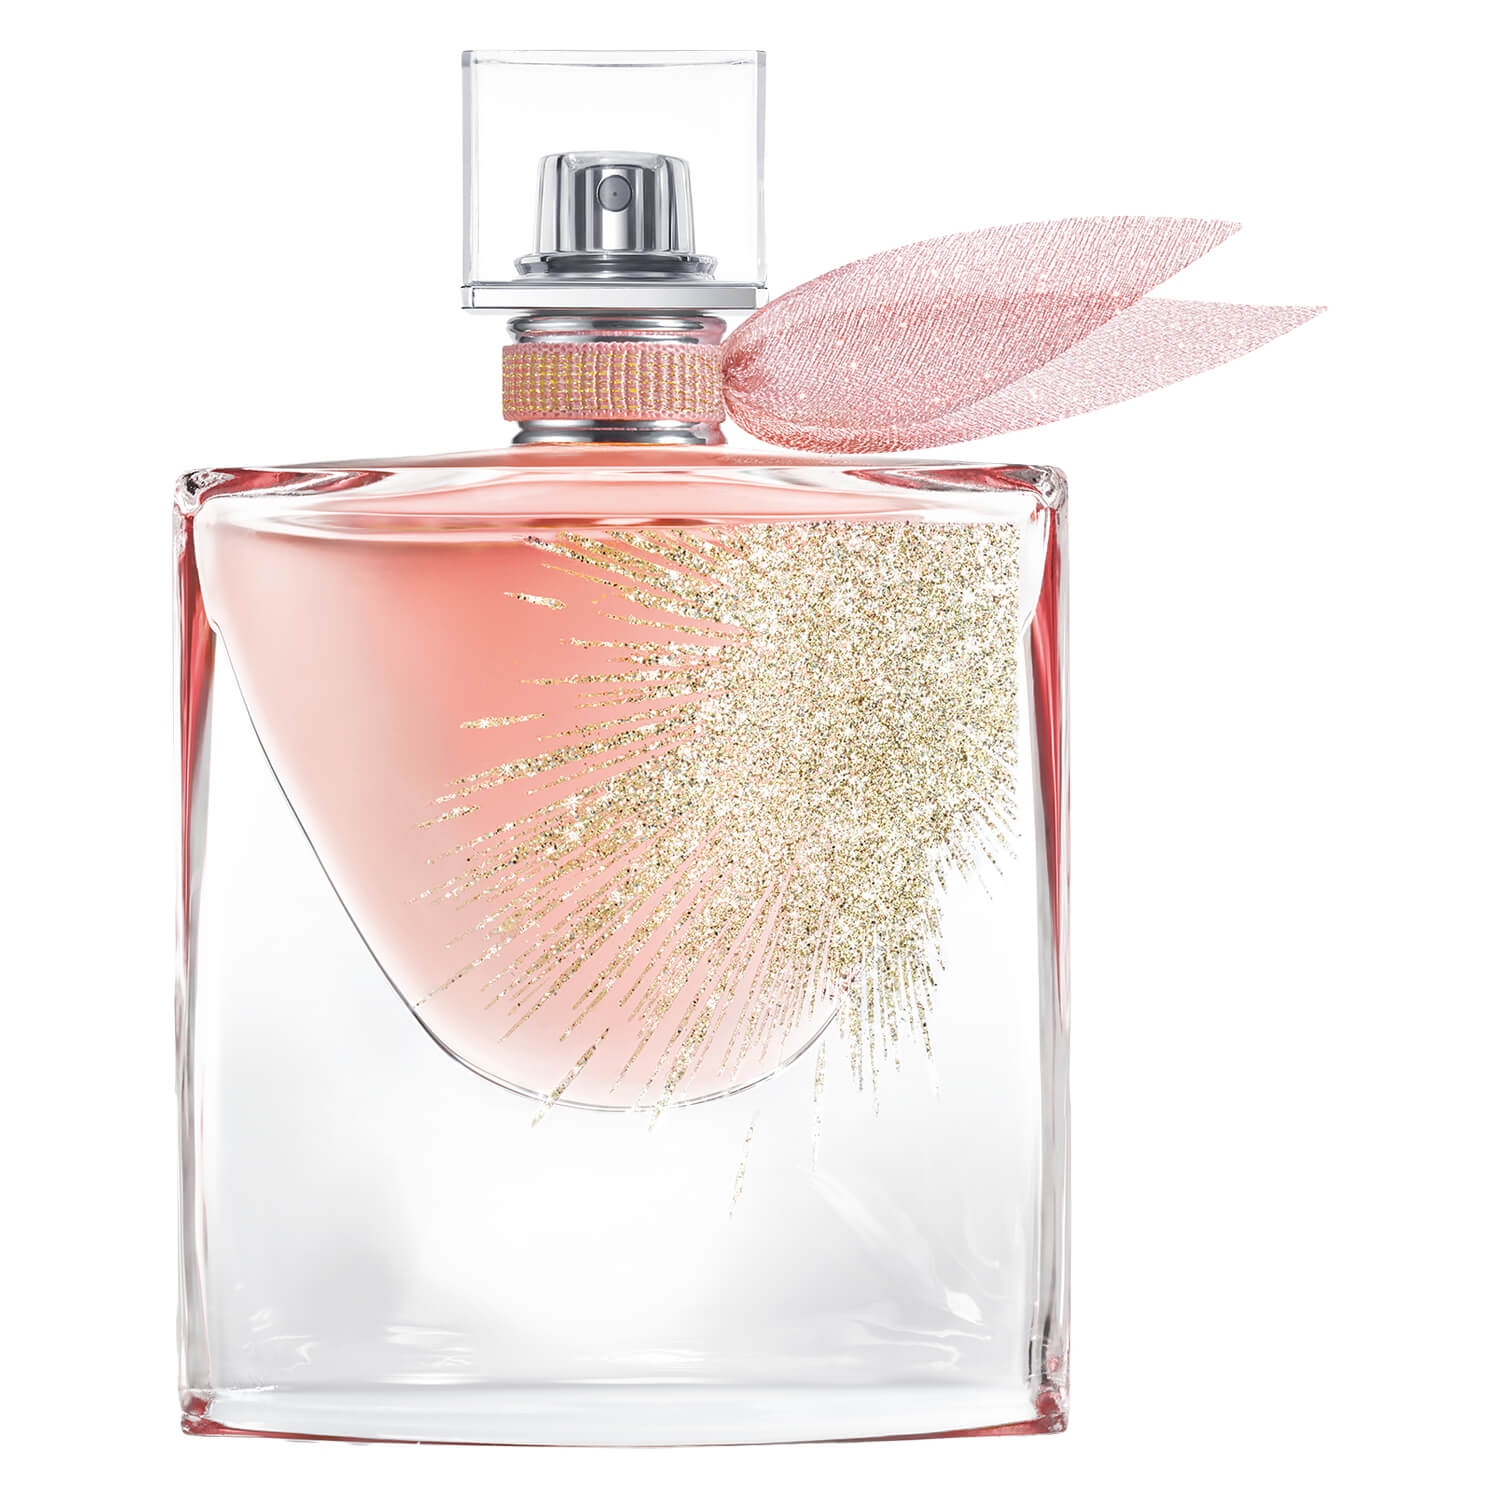 Produktbild von La Vie est Belle - Oui Eau de Parfum